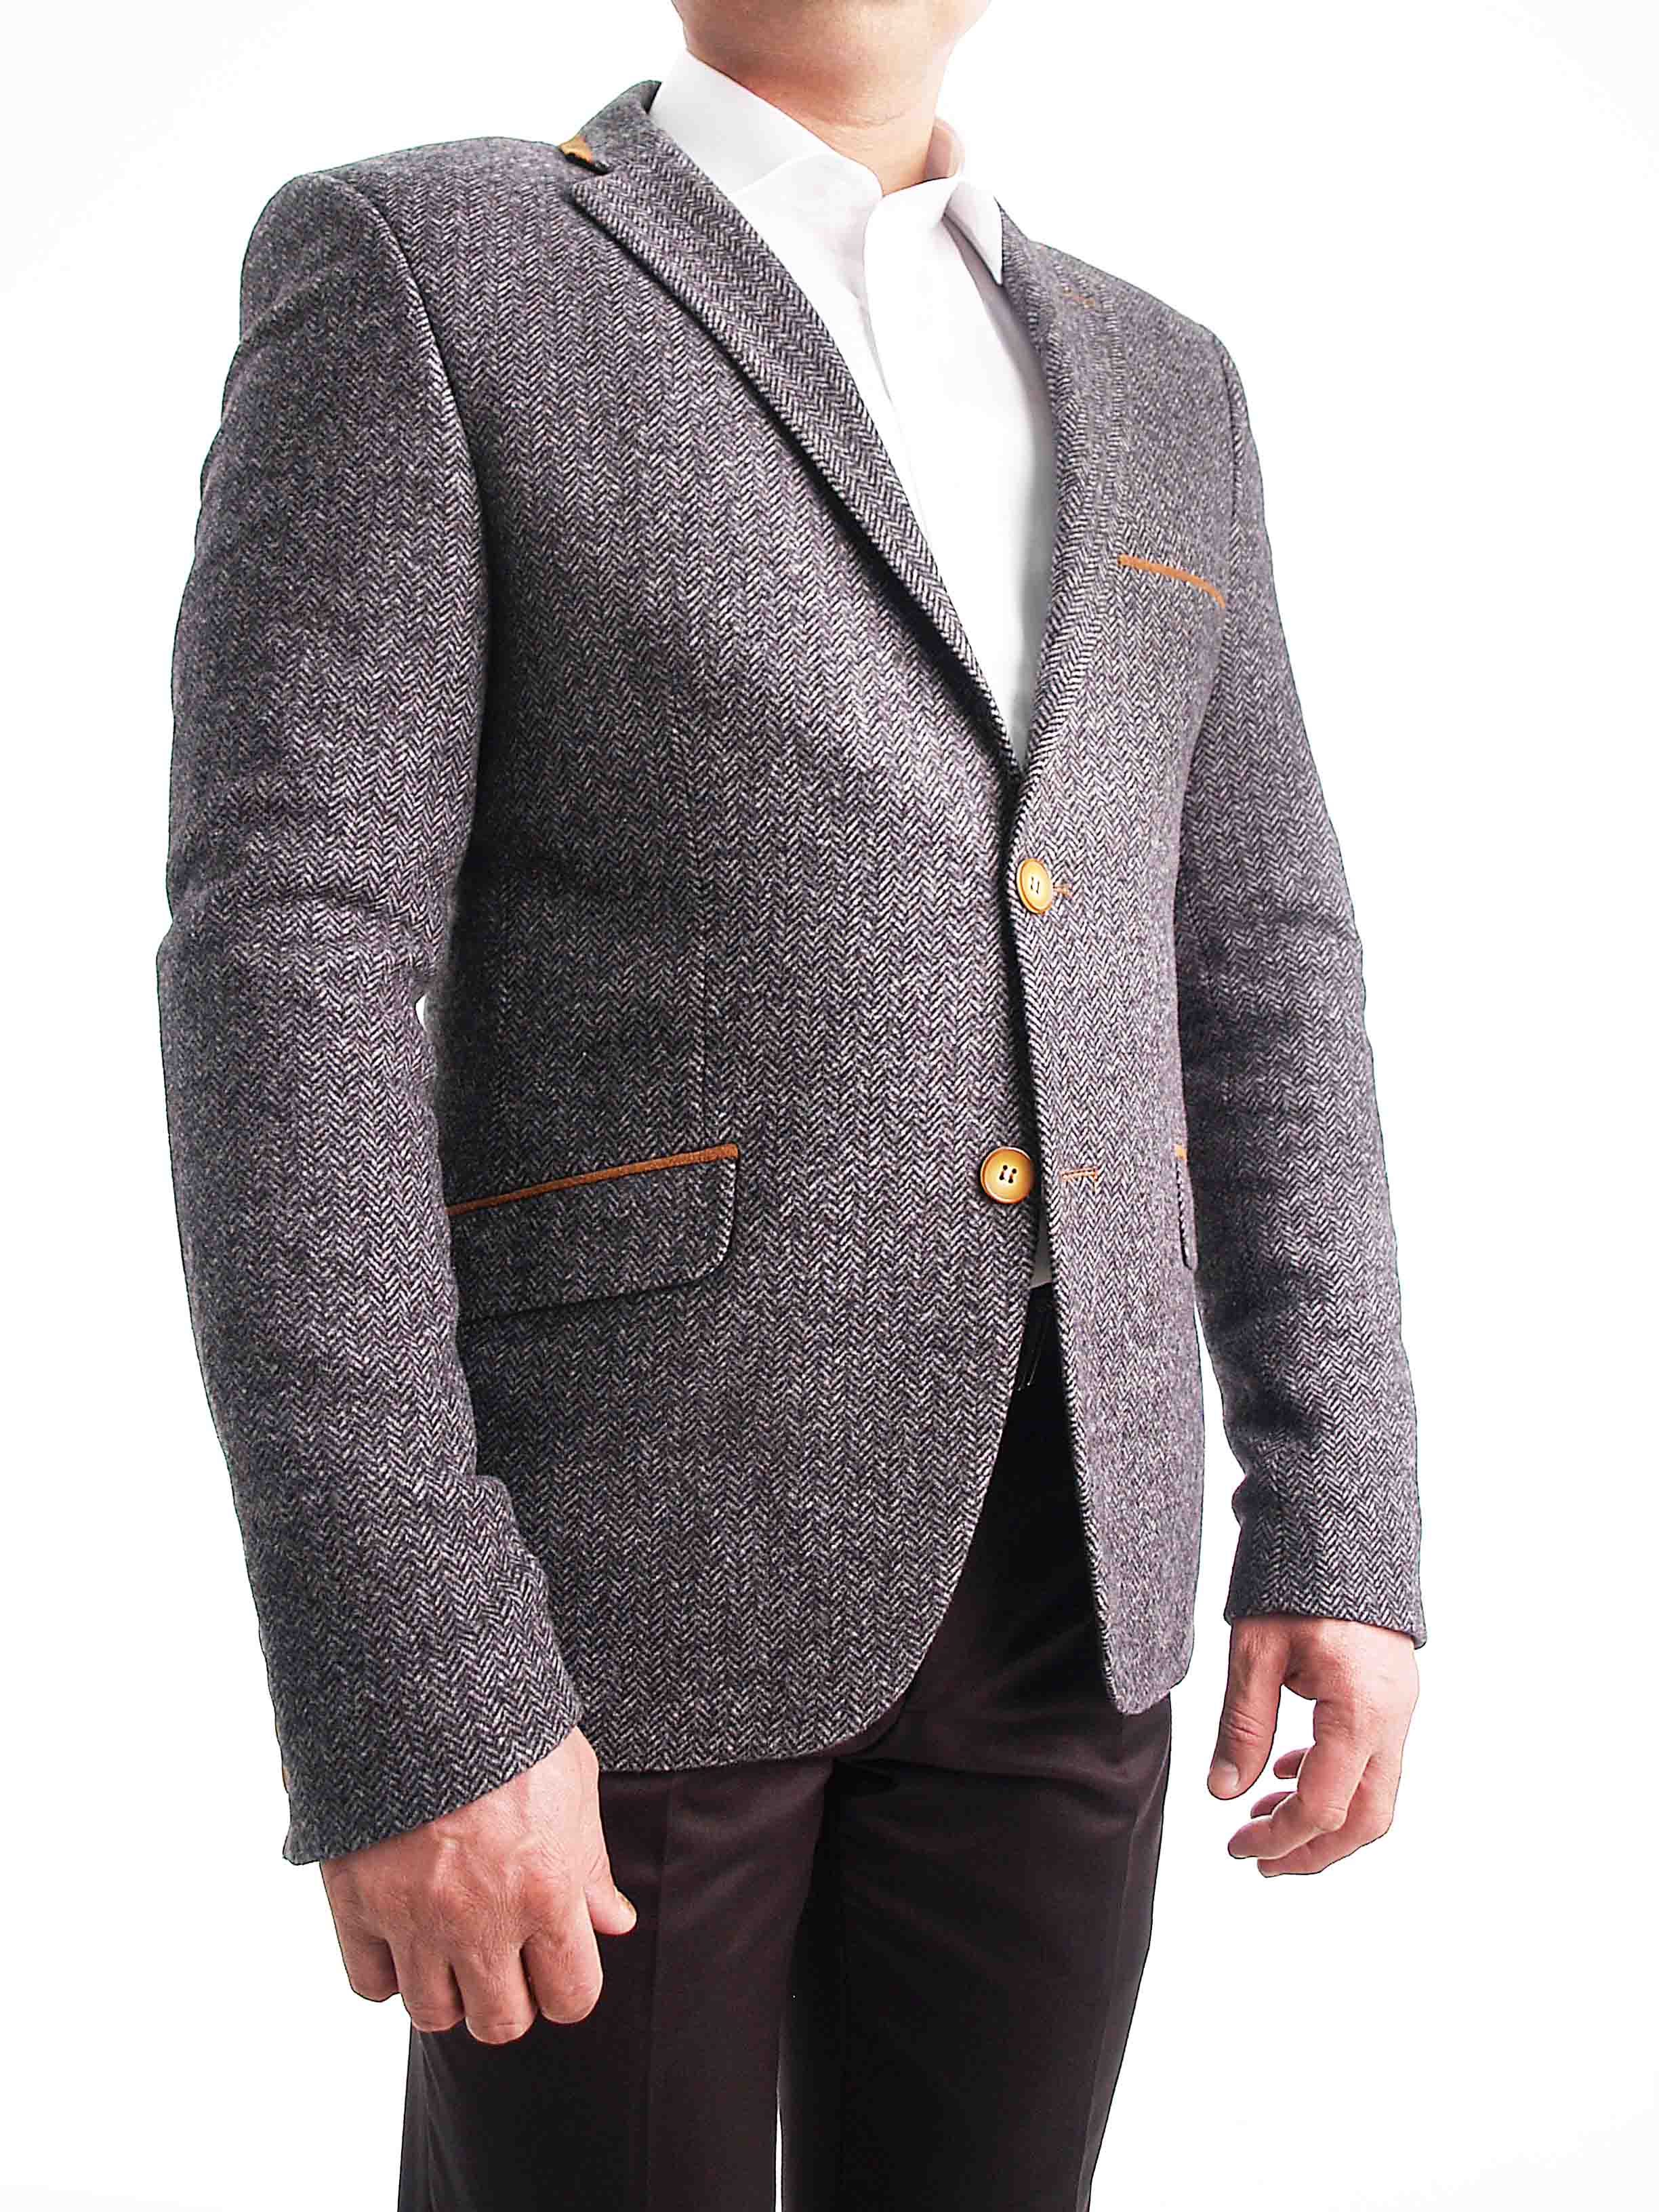 Новости Днепра про Магазин «Видиван» рекомендует: твидовый пиджак – английский стиль в гардеробе